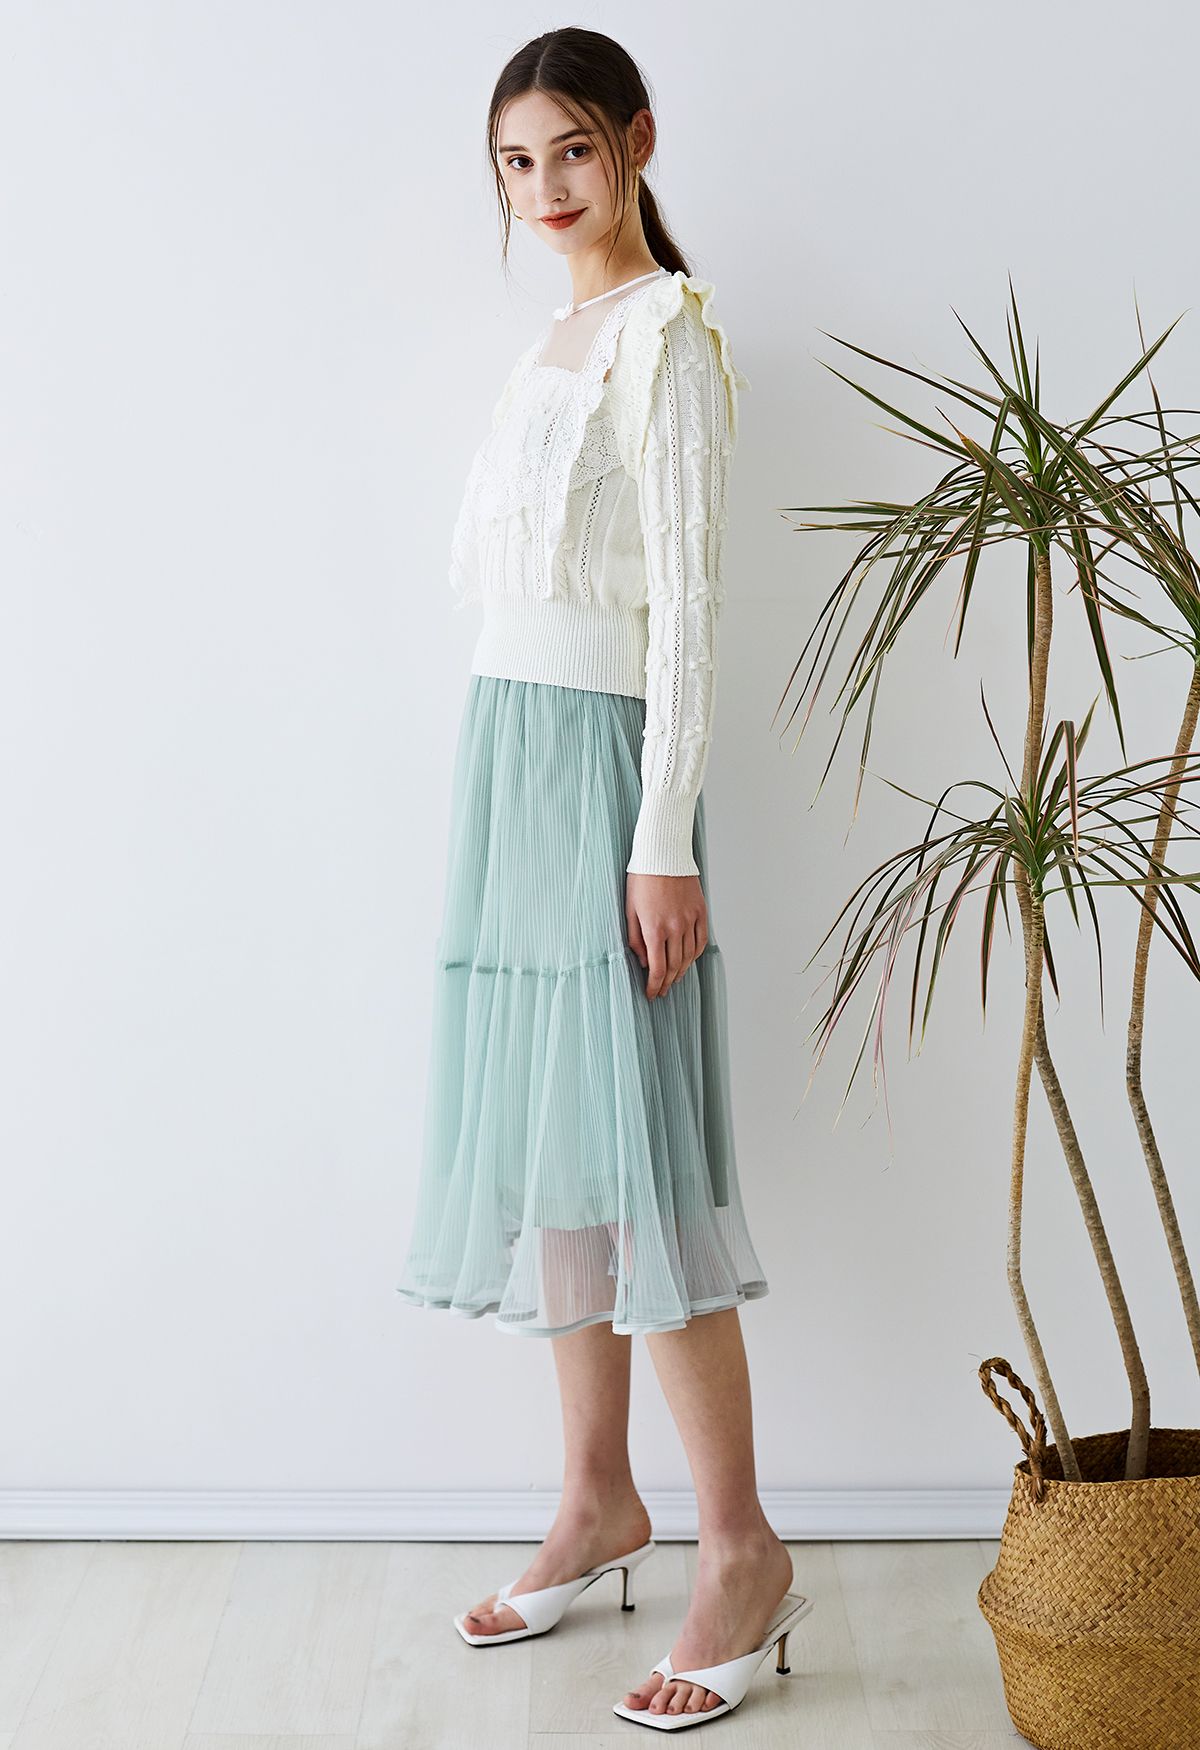 Fairy Plisse Mesh Tulle Midi Skirt in Mint